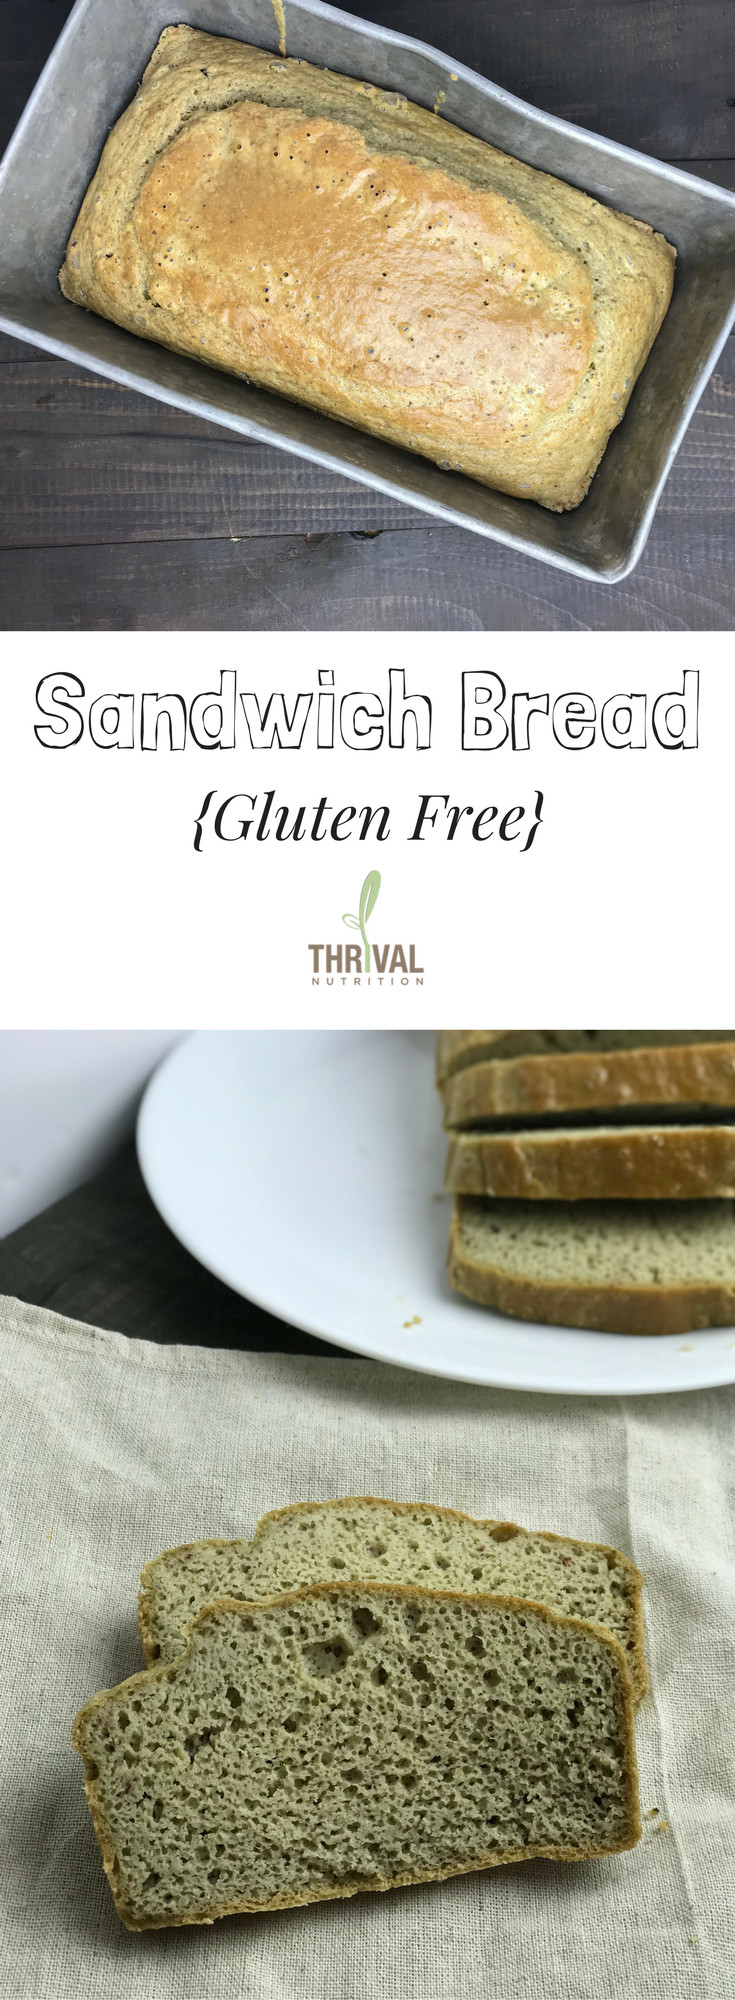 Gluten Free Bread Nutrition
 Gluten Free Sandwich Bread Thrival Nutrition